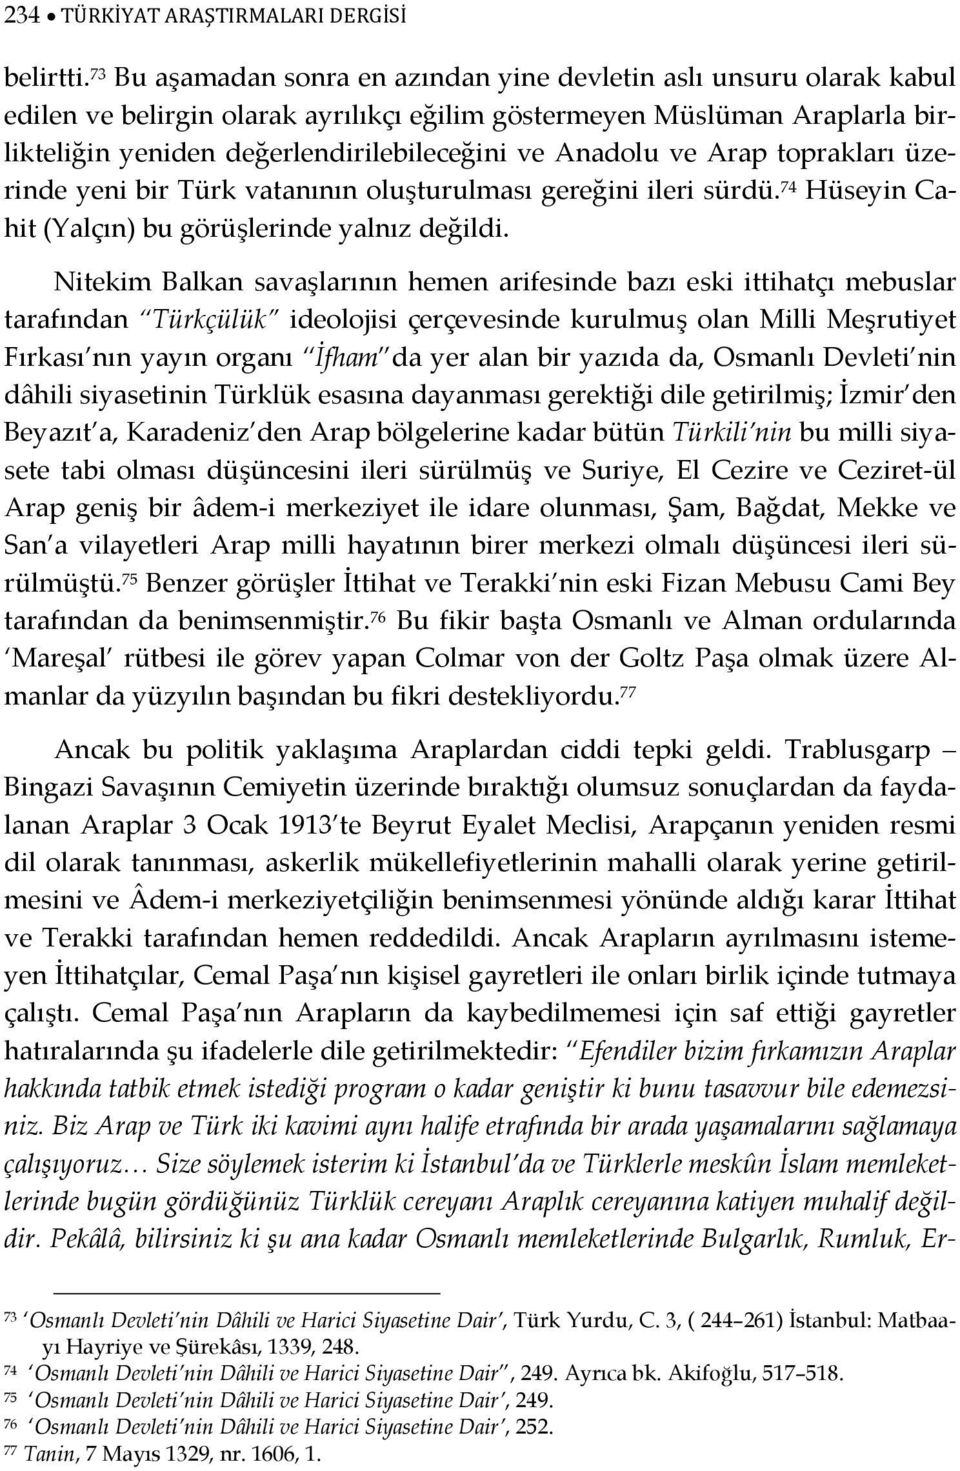 Anadolu ve Arap toprakları üzerinde yeni bir Türk vatanının oluşturulması gereğini ileri sürdü. 74 Hüseyin Cahit (Yalçın) bu görüşlerinde yalnız değildi.